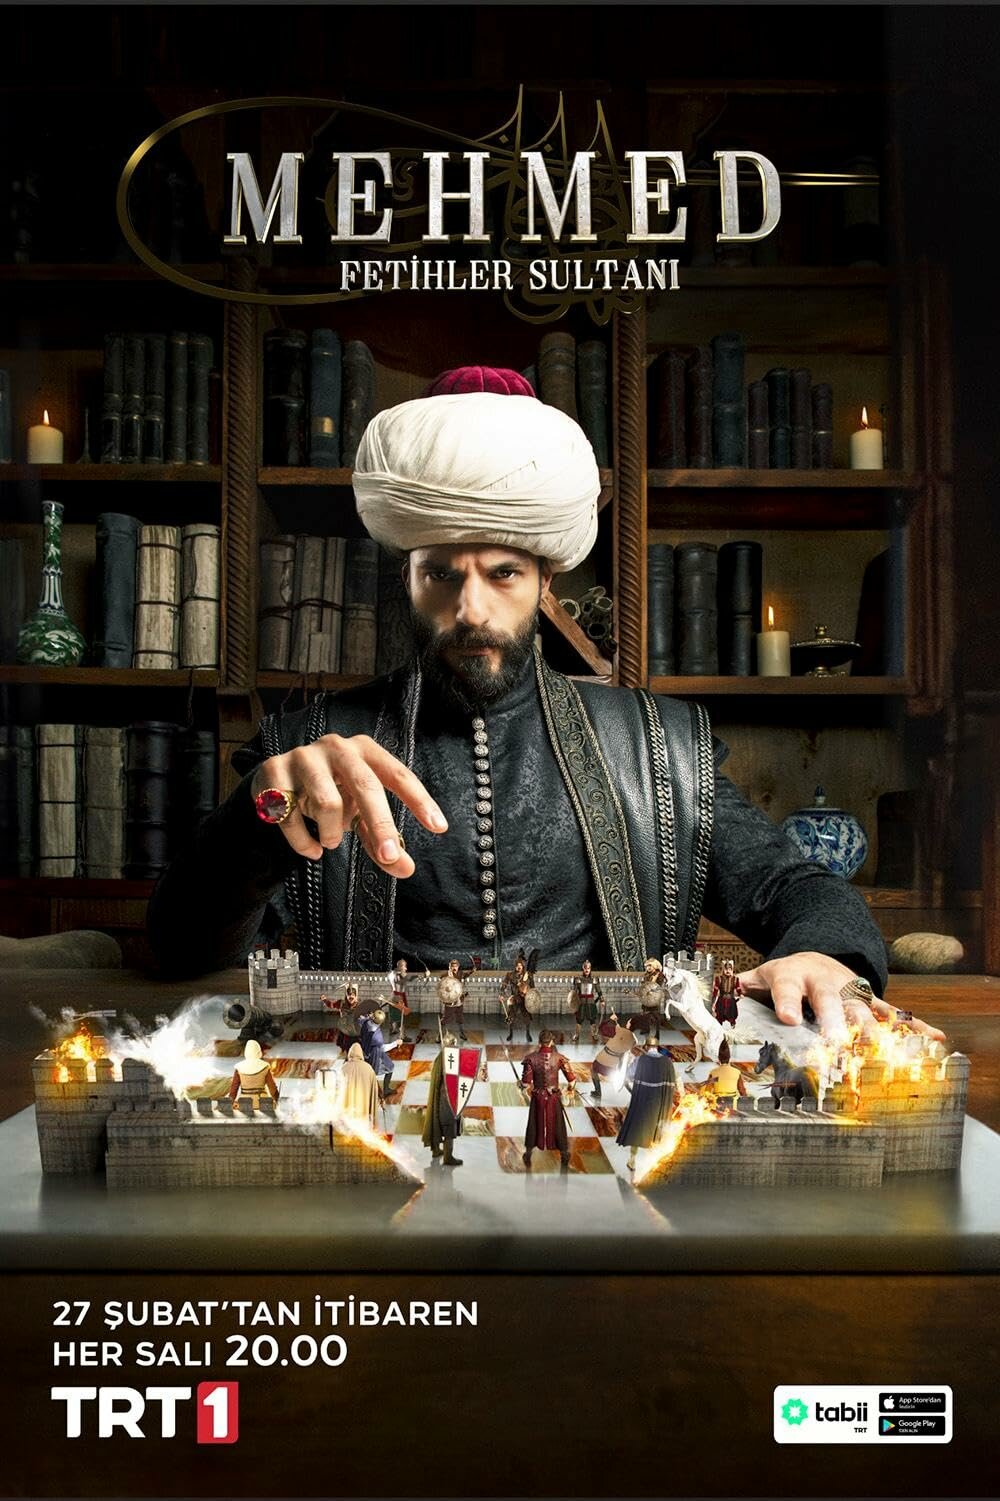 Mehmed Fetihler Sultanı ne zaman